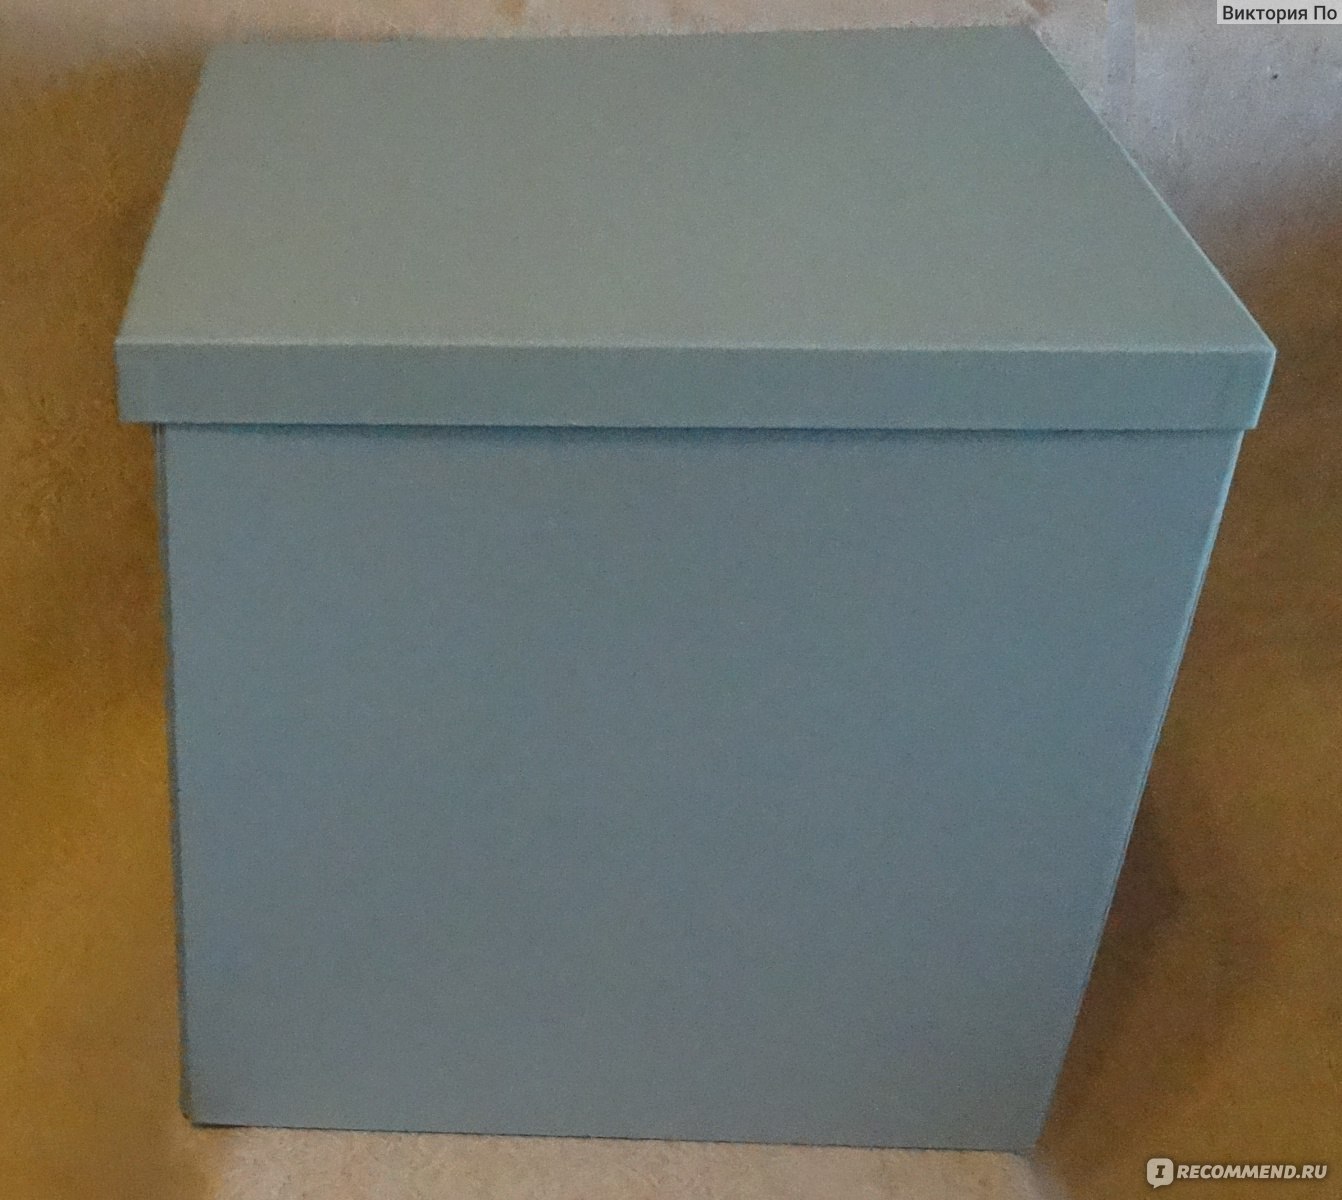 Купить Стандартные картонные коробки в Москве оптом недорого | Фабрика коробок Ронбел - страница 1